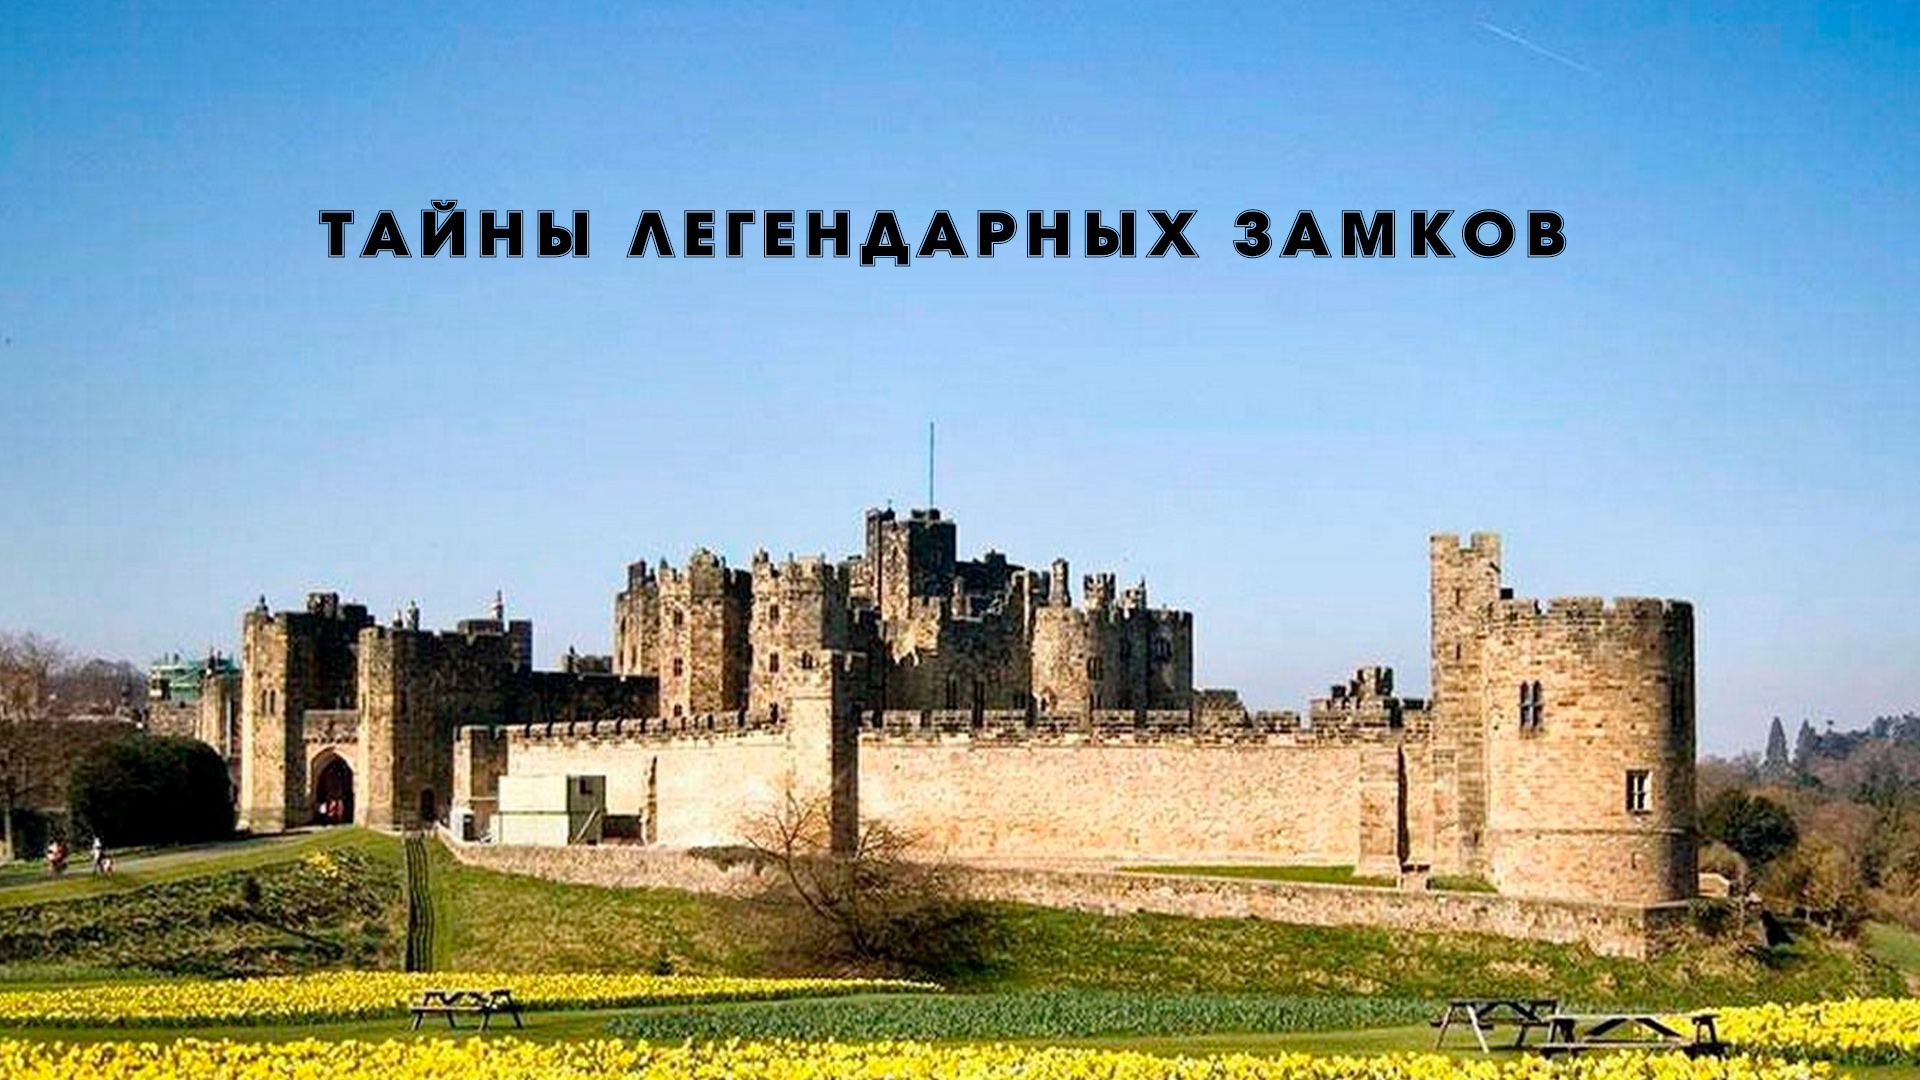 Тайны легендарных замков